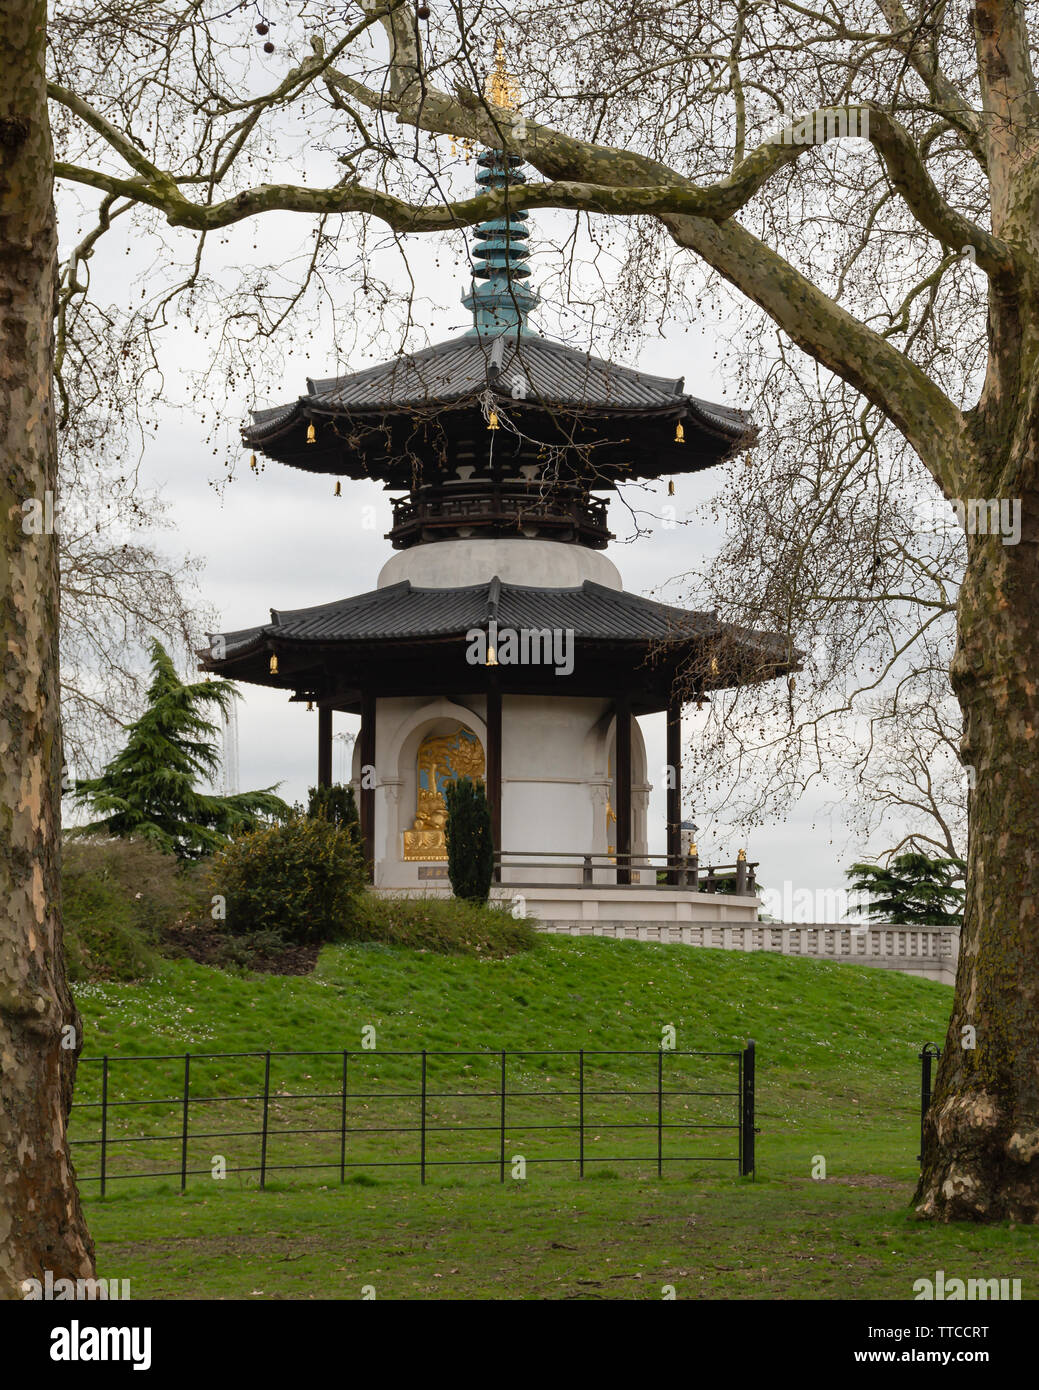 London - London Pagoda della Pace, Battersea Park - Marzo 20, 2019 Foto Stock